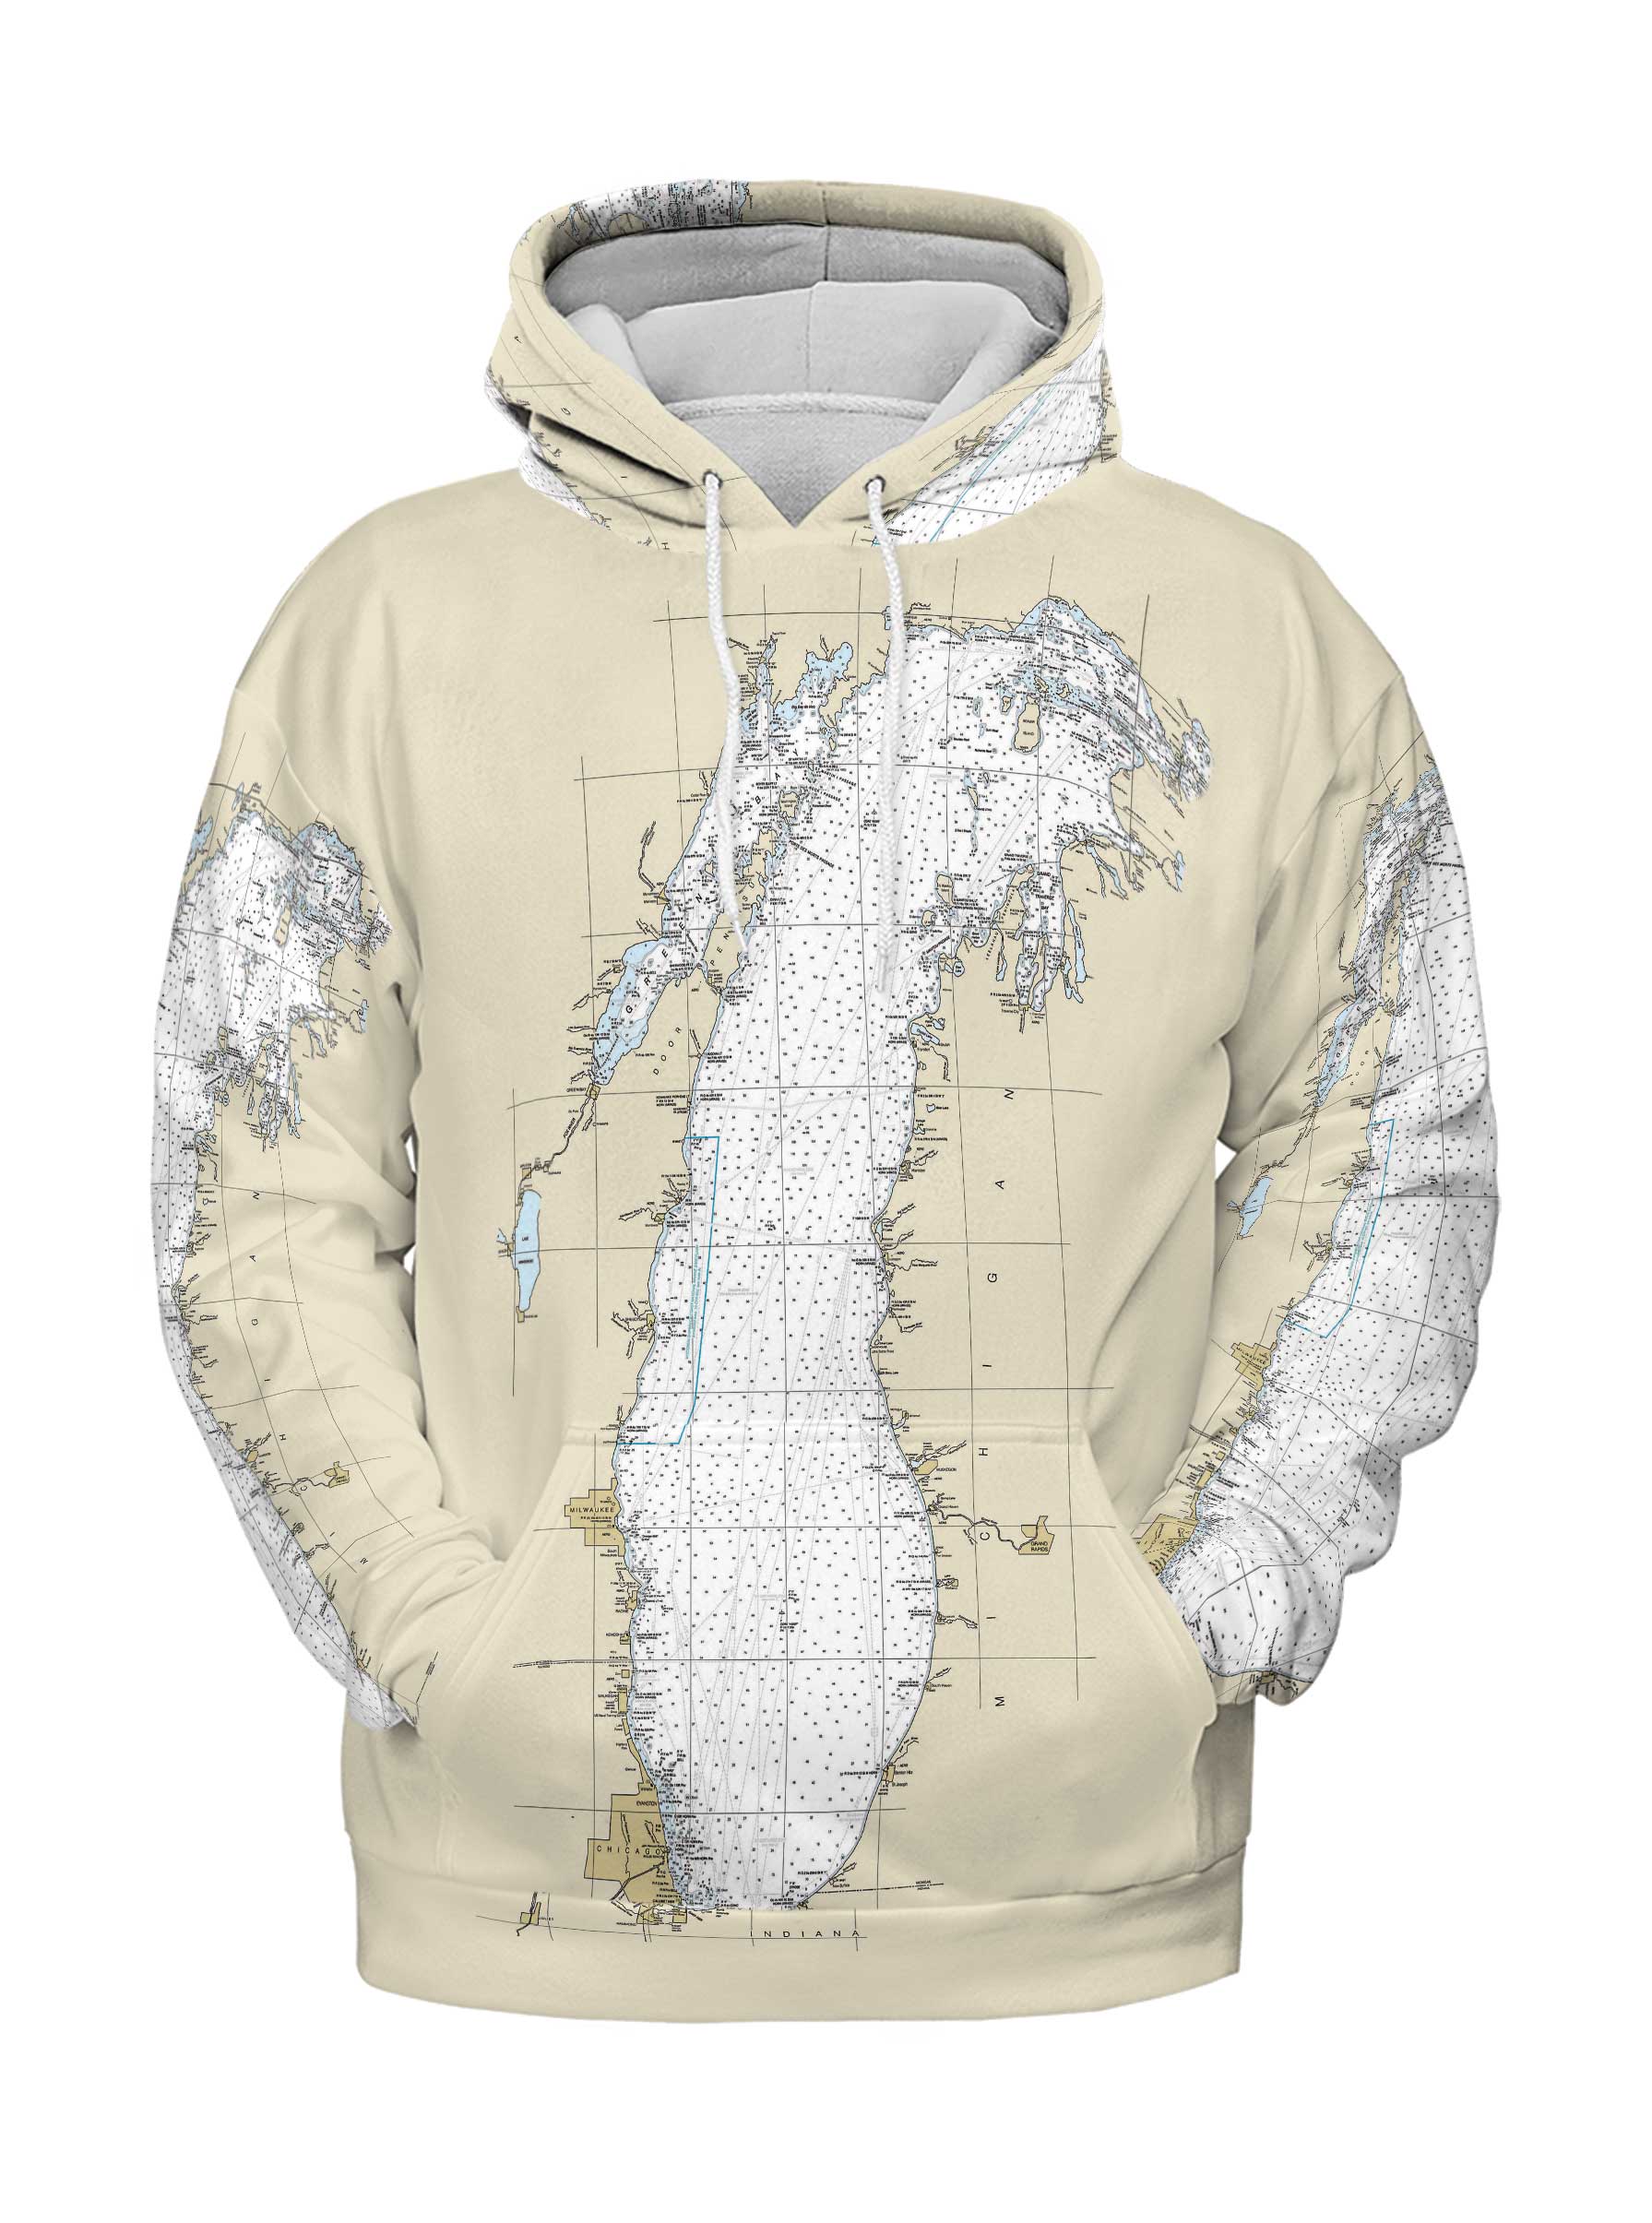 The Lake Michigan Lightweight Hoodie Sweatshirt